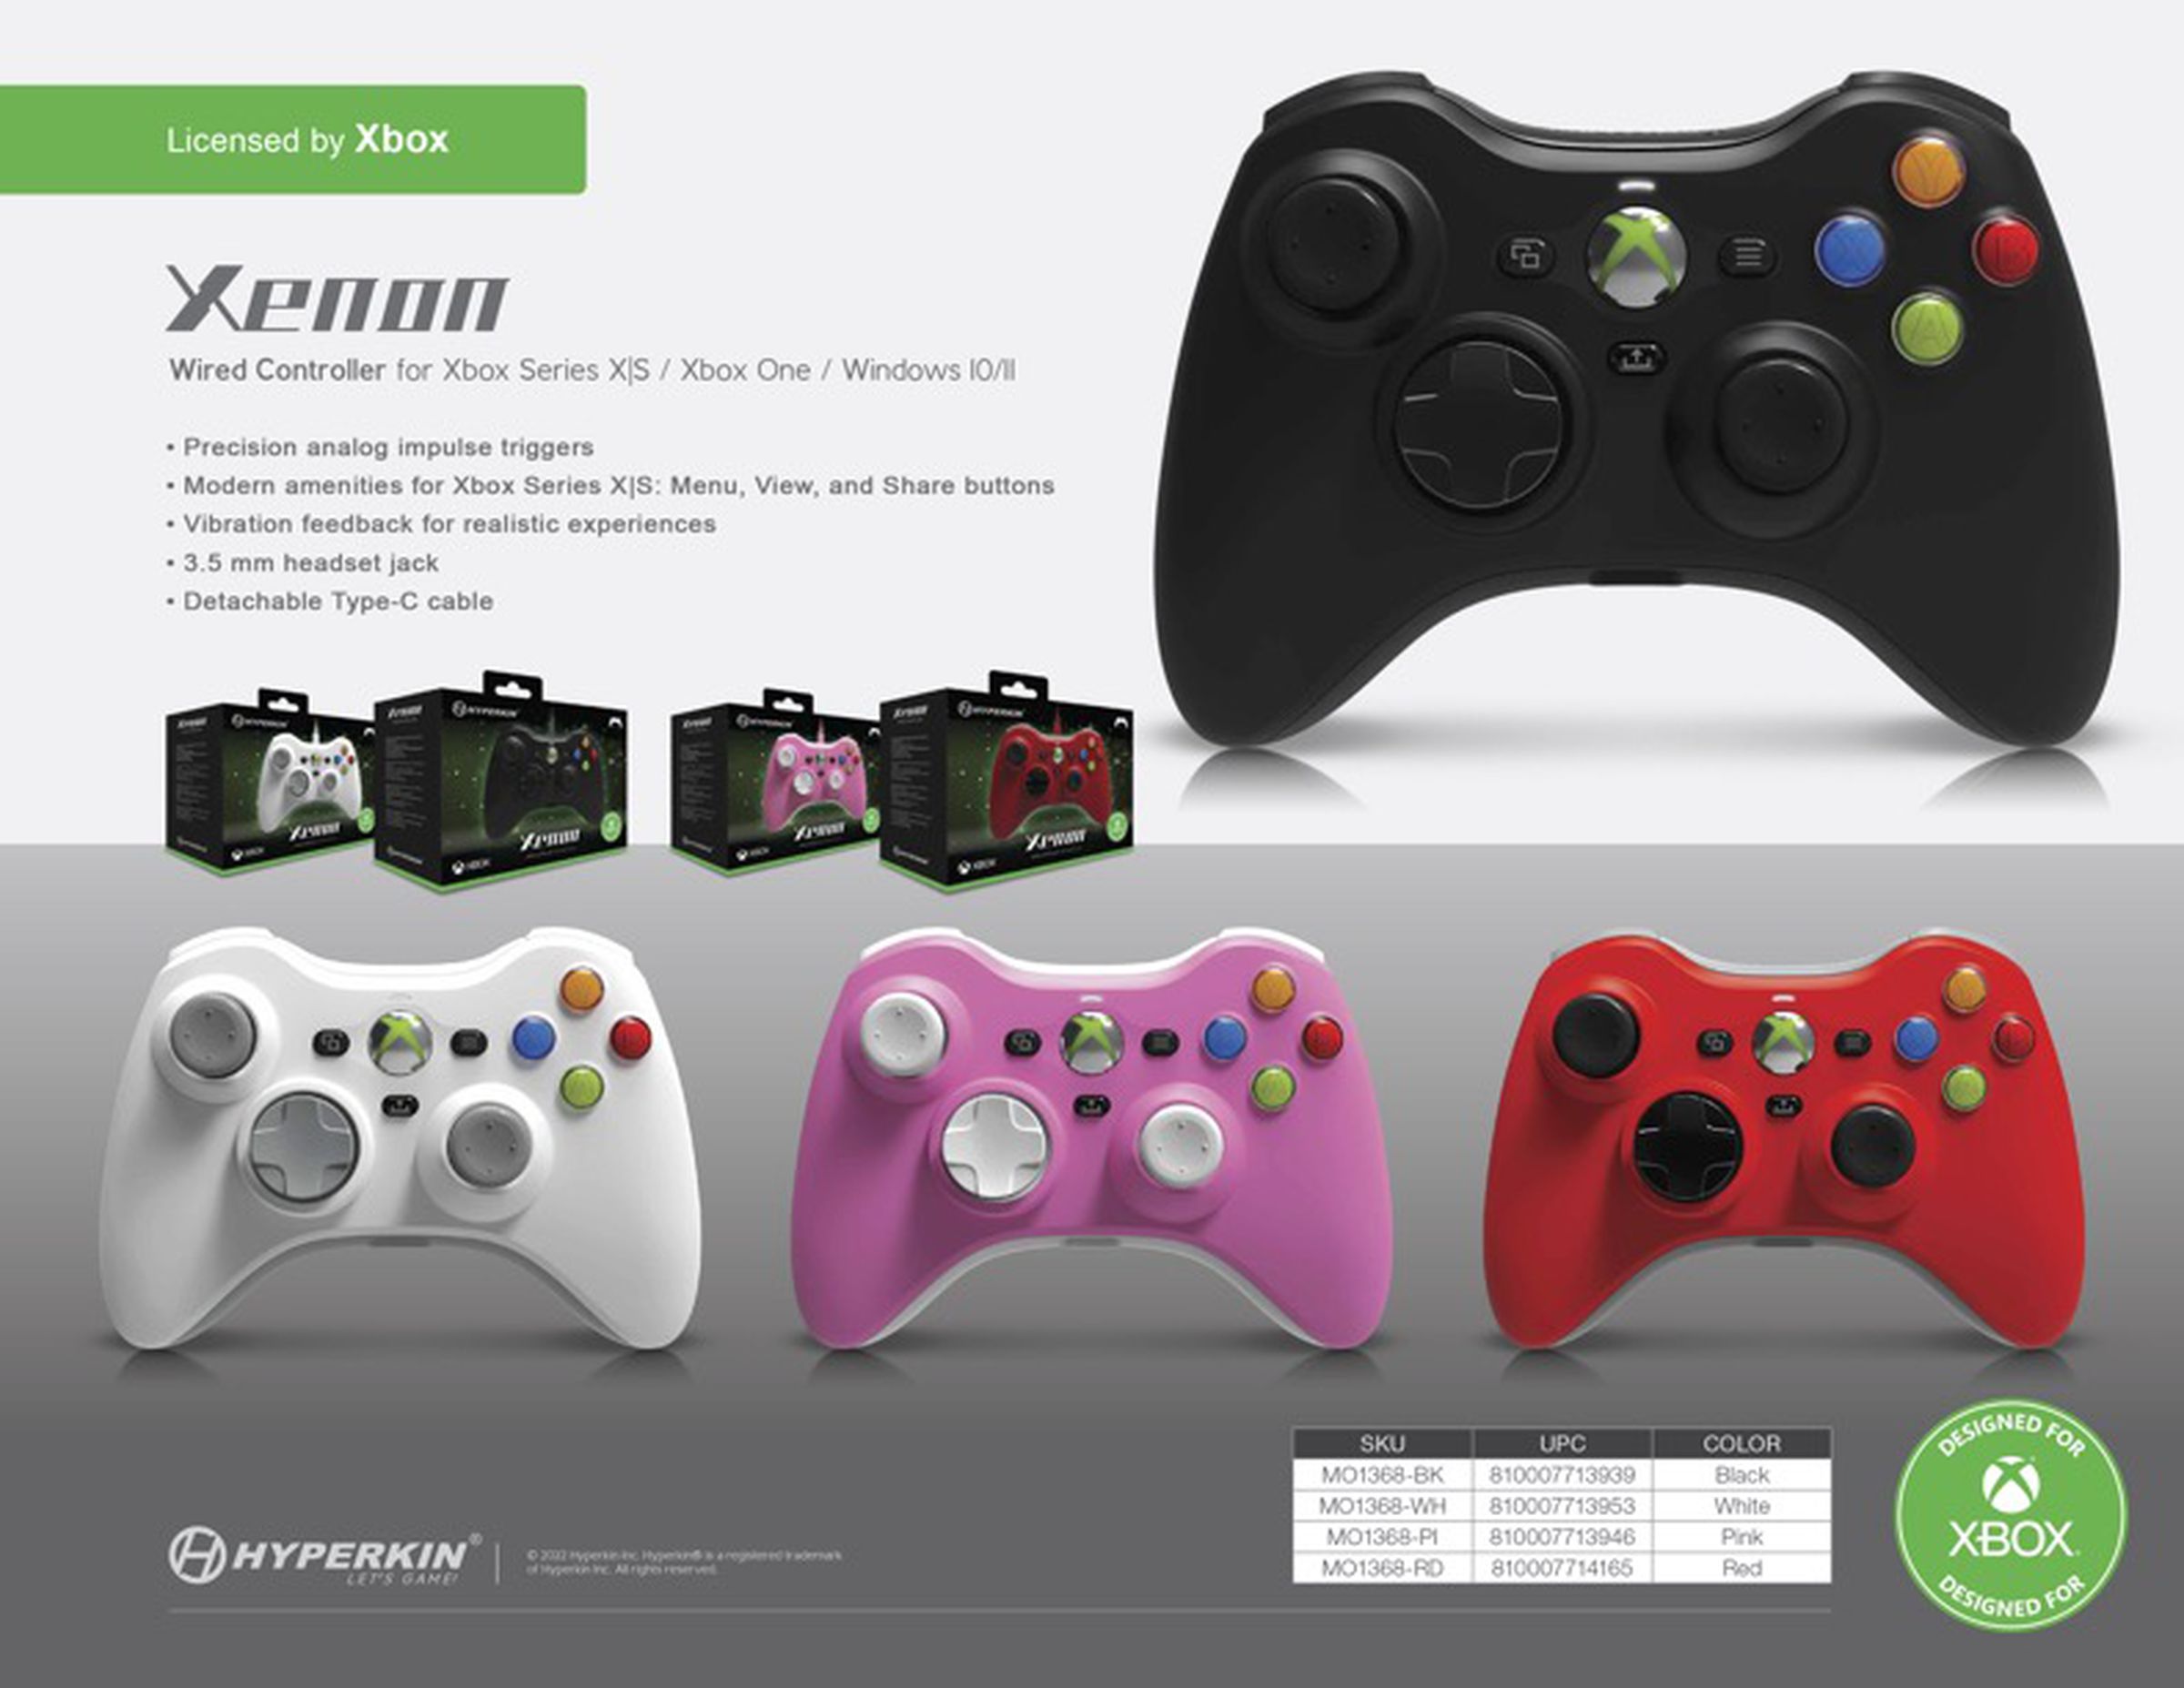 ஹைபர்கின் Xbox 360 கட்டுப்படுத்தியை நவீன கன்சோல்கள் மற்றும் PC க்காக ரீமேக் செய்கிறது